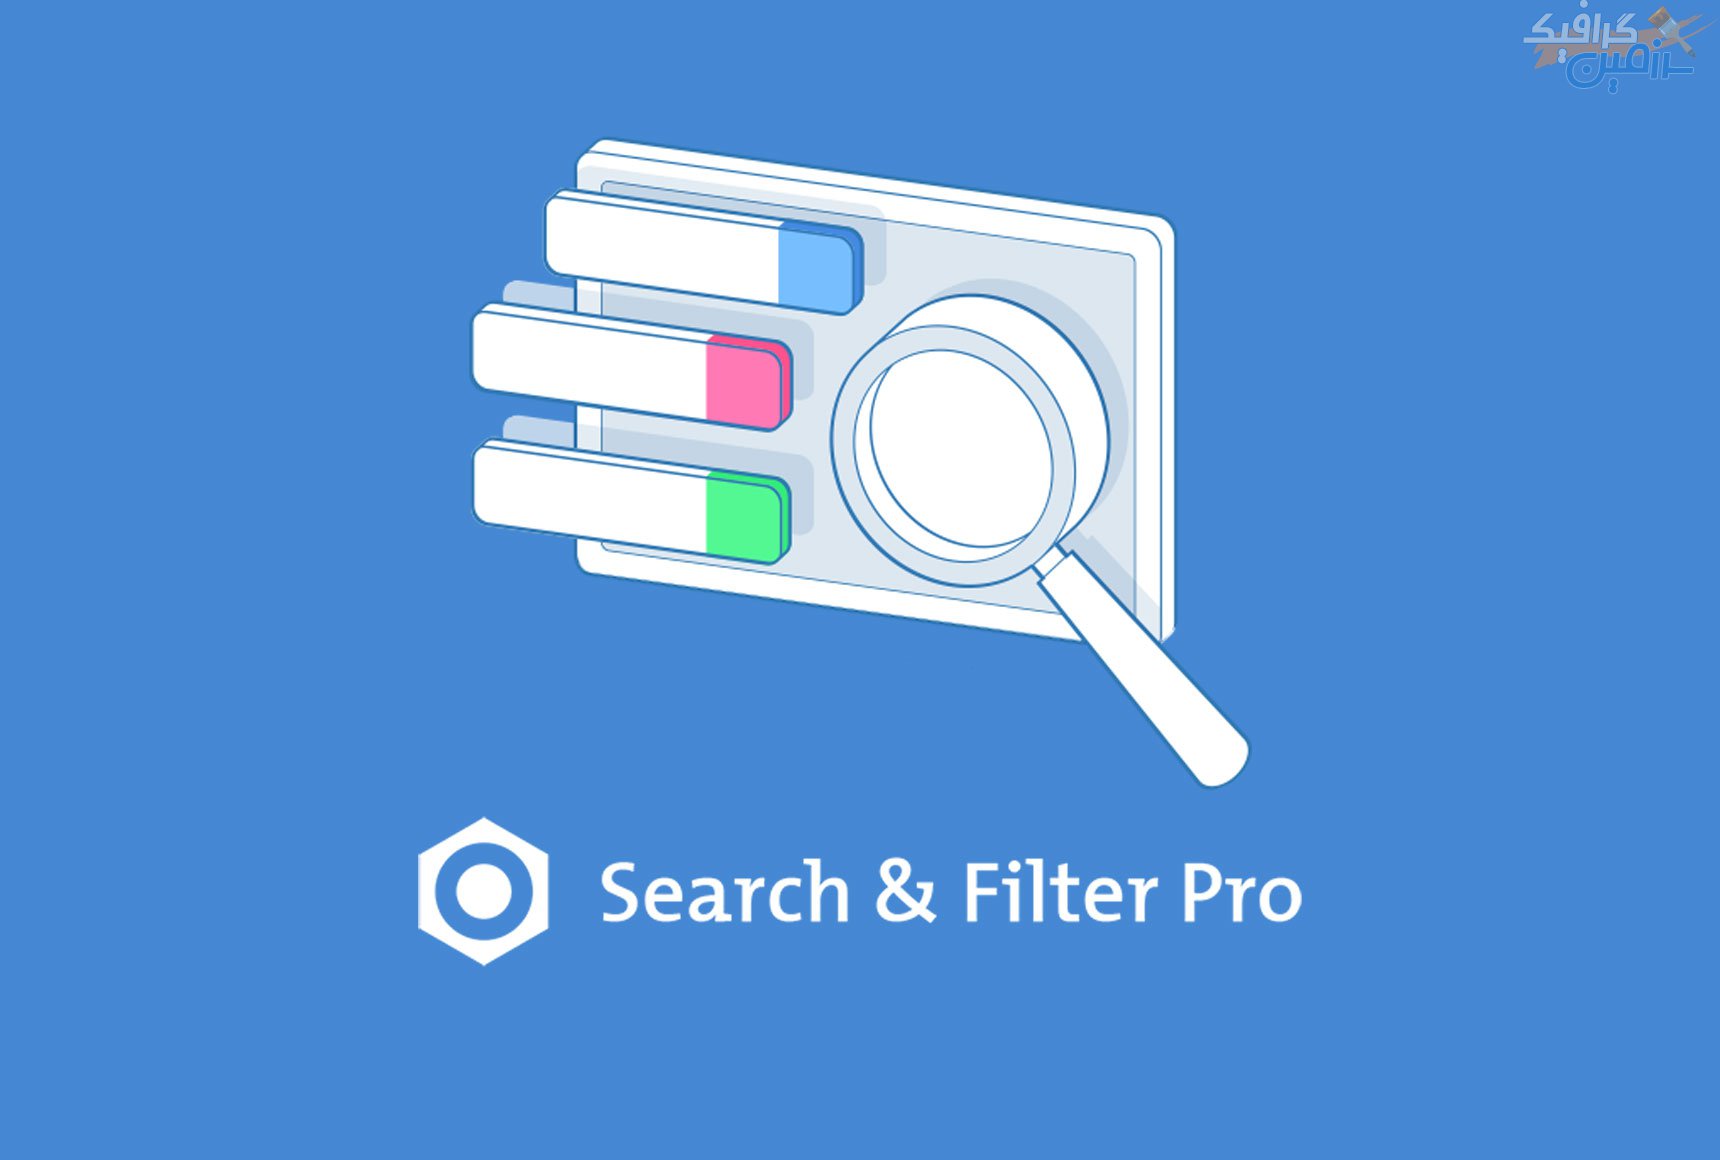 دانلود افزونه وردپرس Search & Filter Pro – نسخه ۲.۵.۱۲ منتشر شد